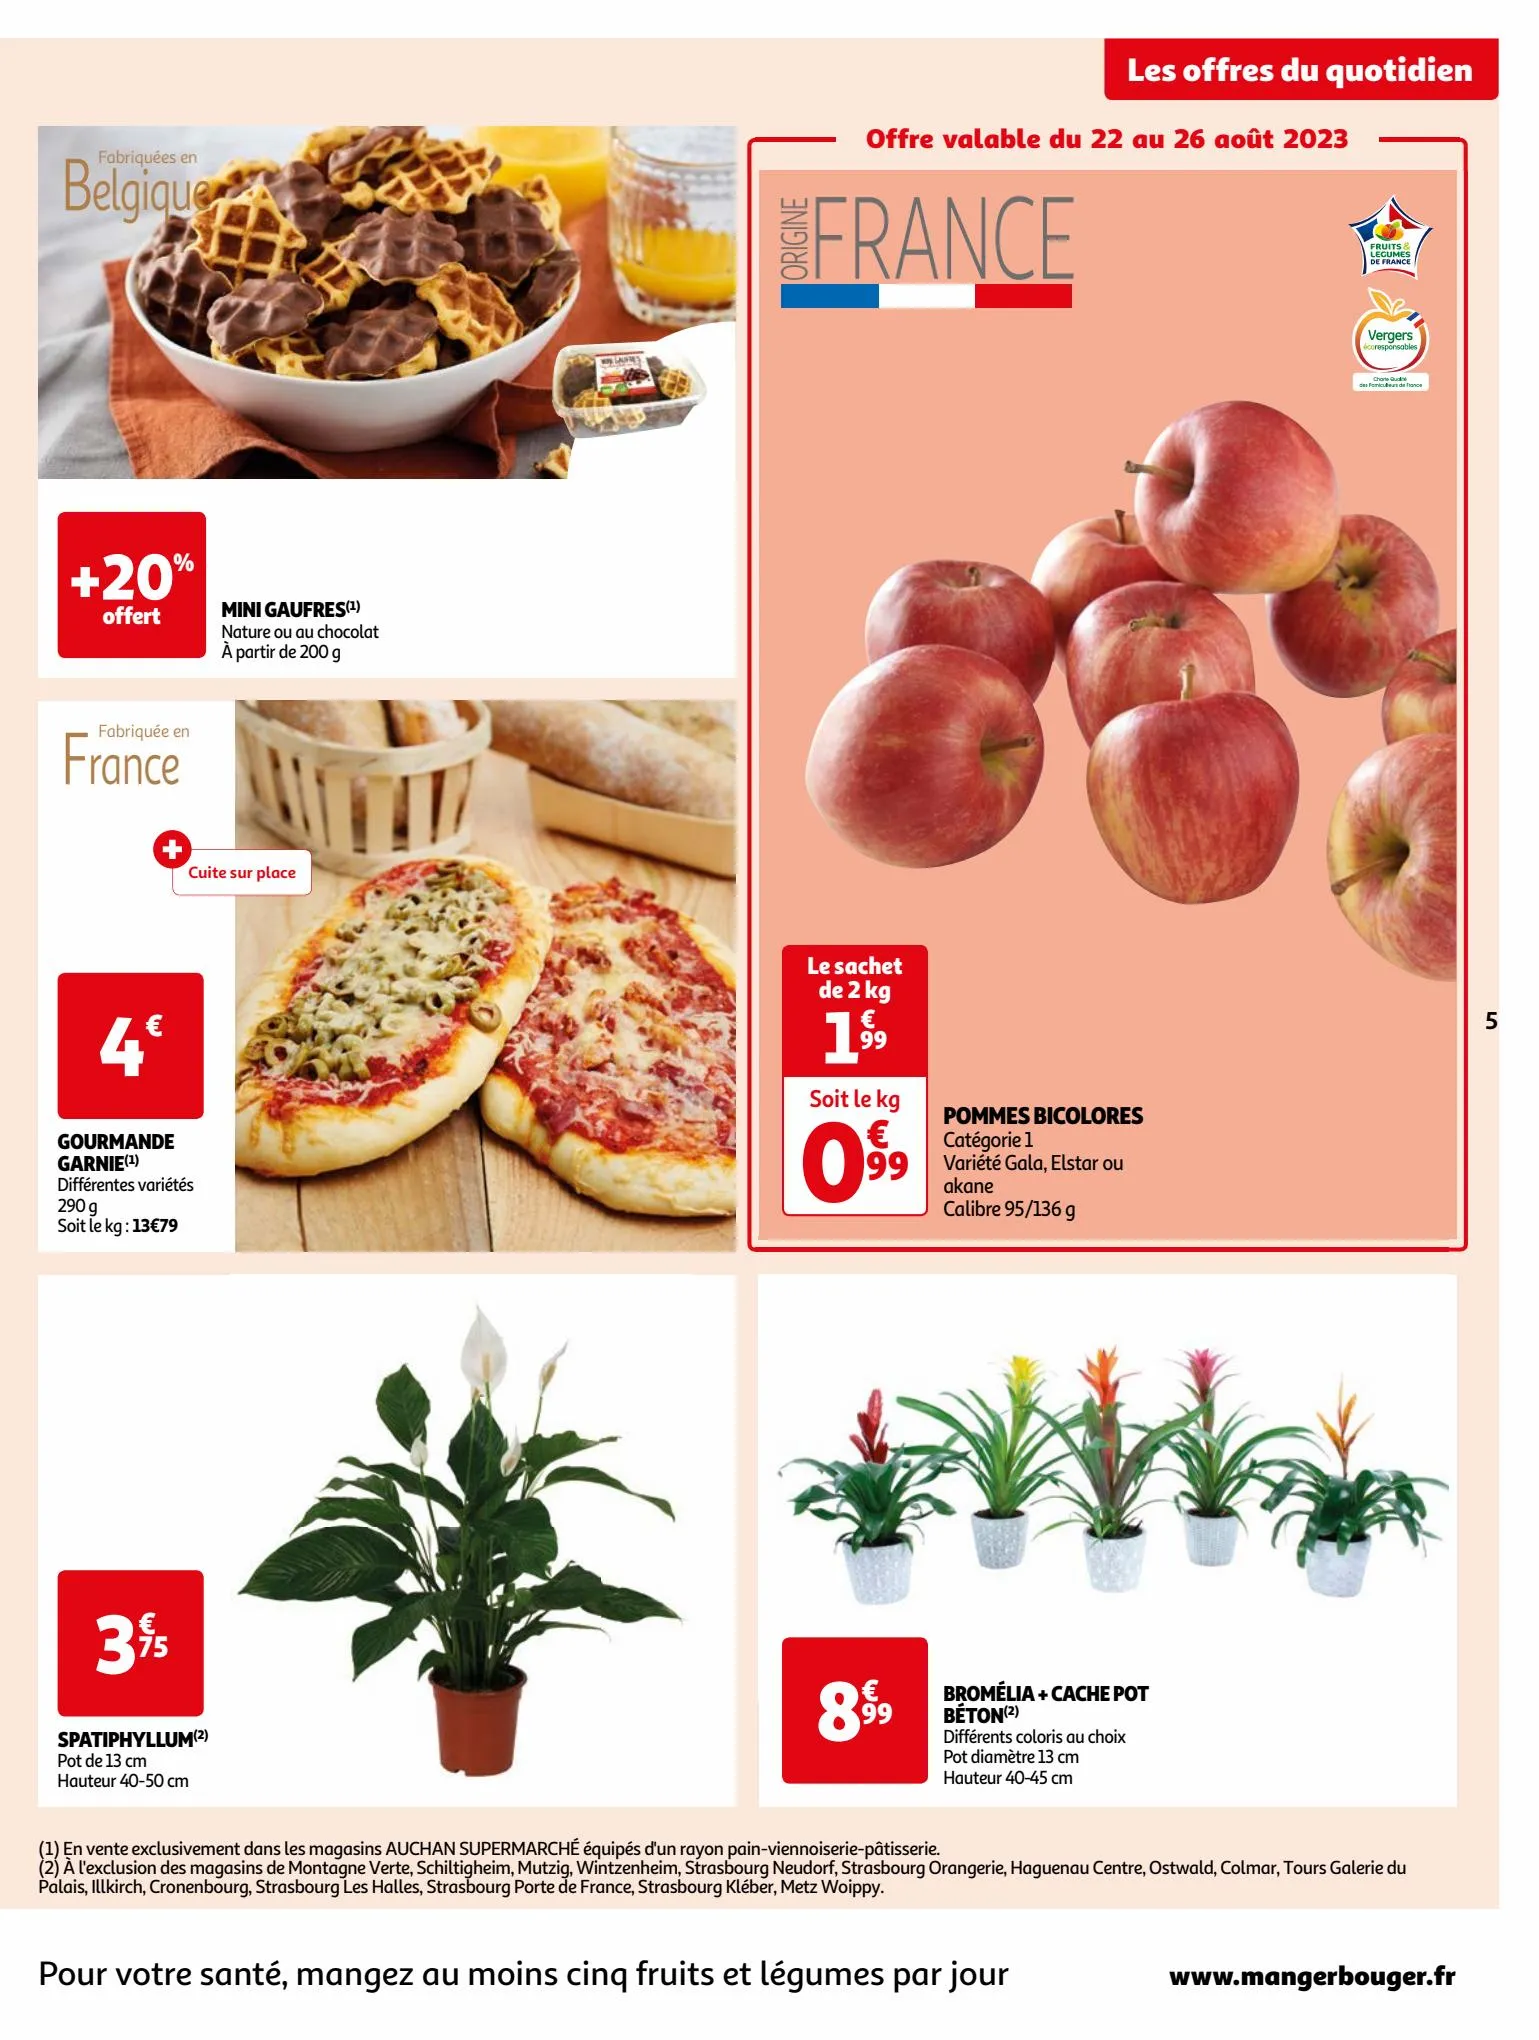 Catalogue Format XXL à prix XXS dans votre supermarché, page 00005